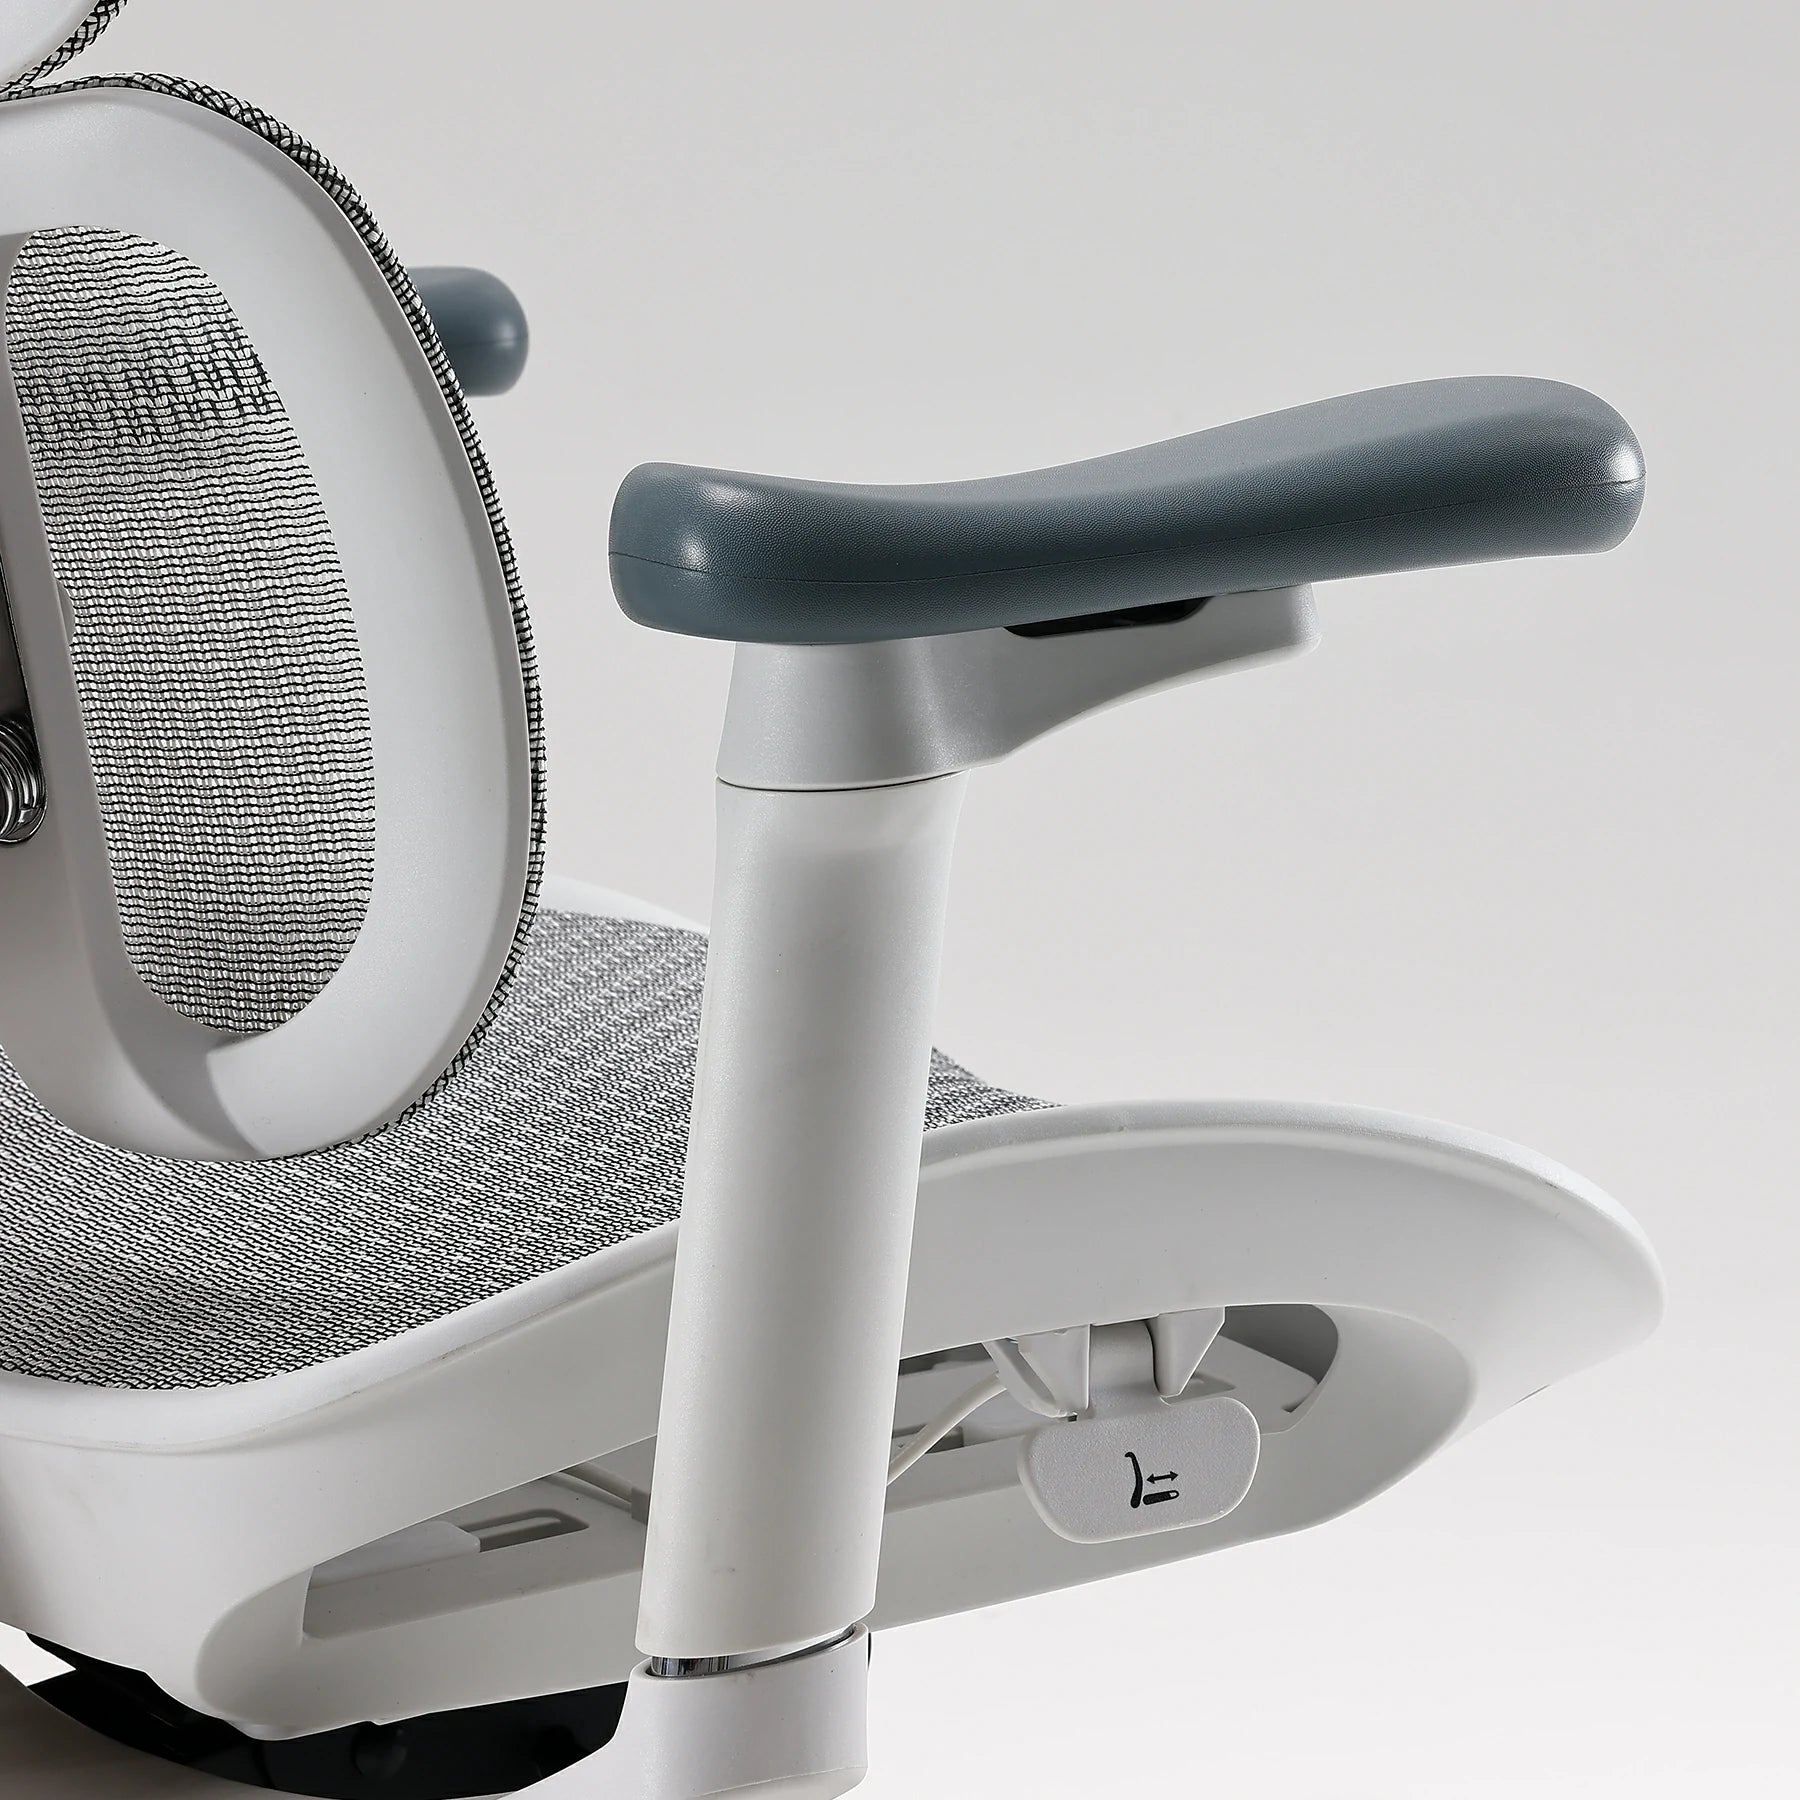 <tc>(nuova) Sihoo Doro S100 sedia ergonomica per ufficio con doppio supporto dinamico lombare</tc>